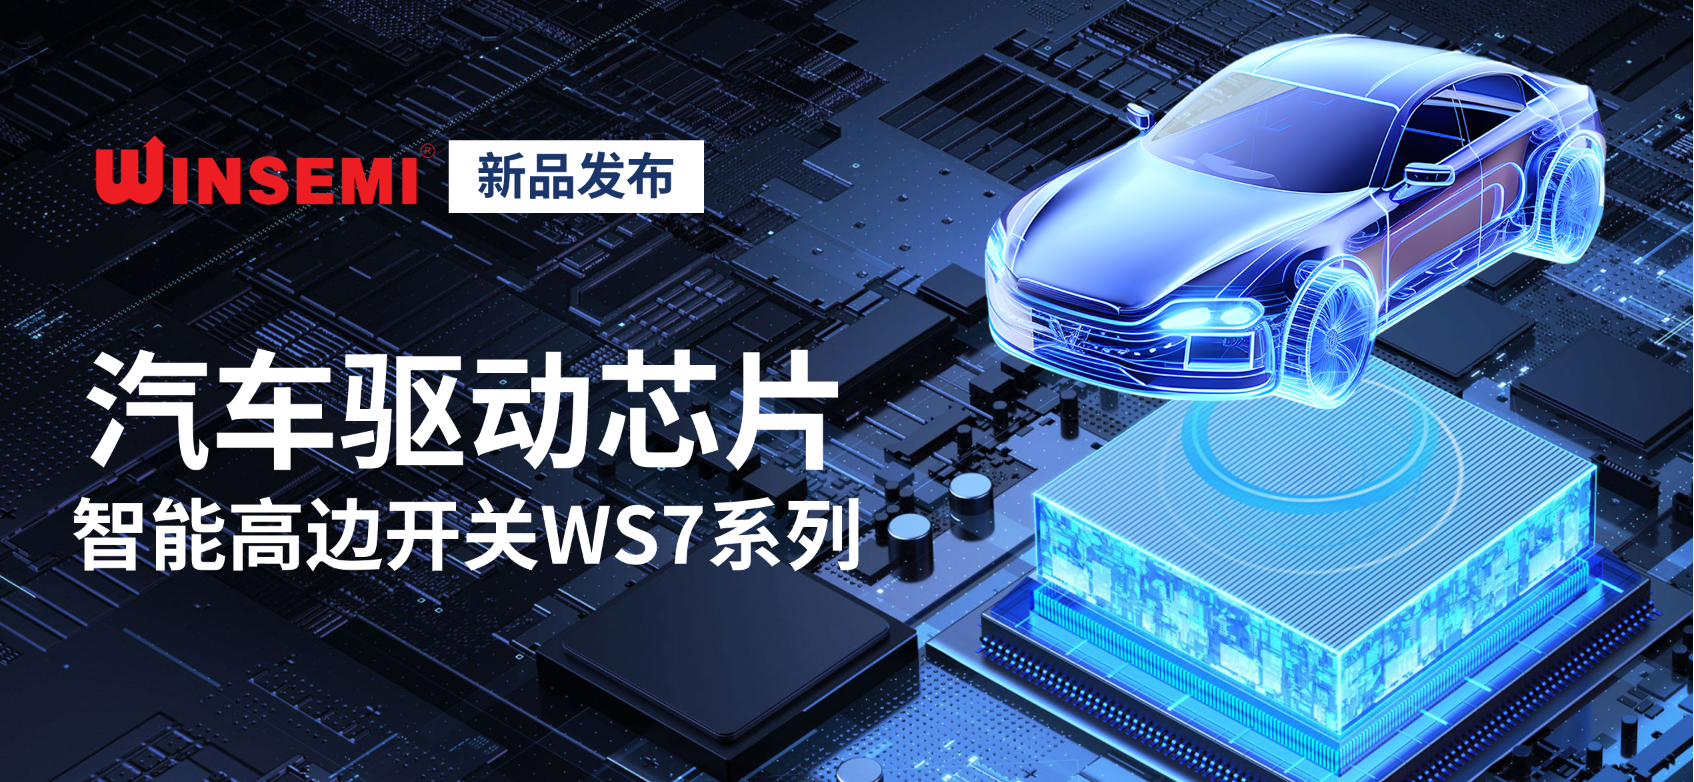 新蒲京娱乐场3245重磅发布汽车驱动芯片智能高边开关WS7系列